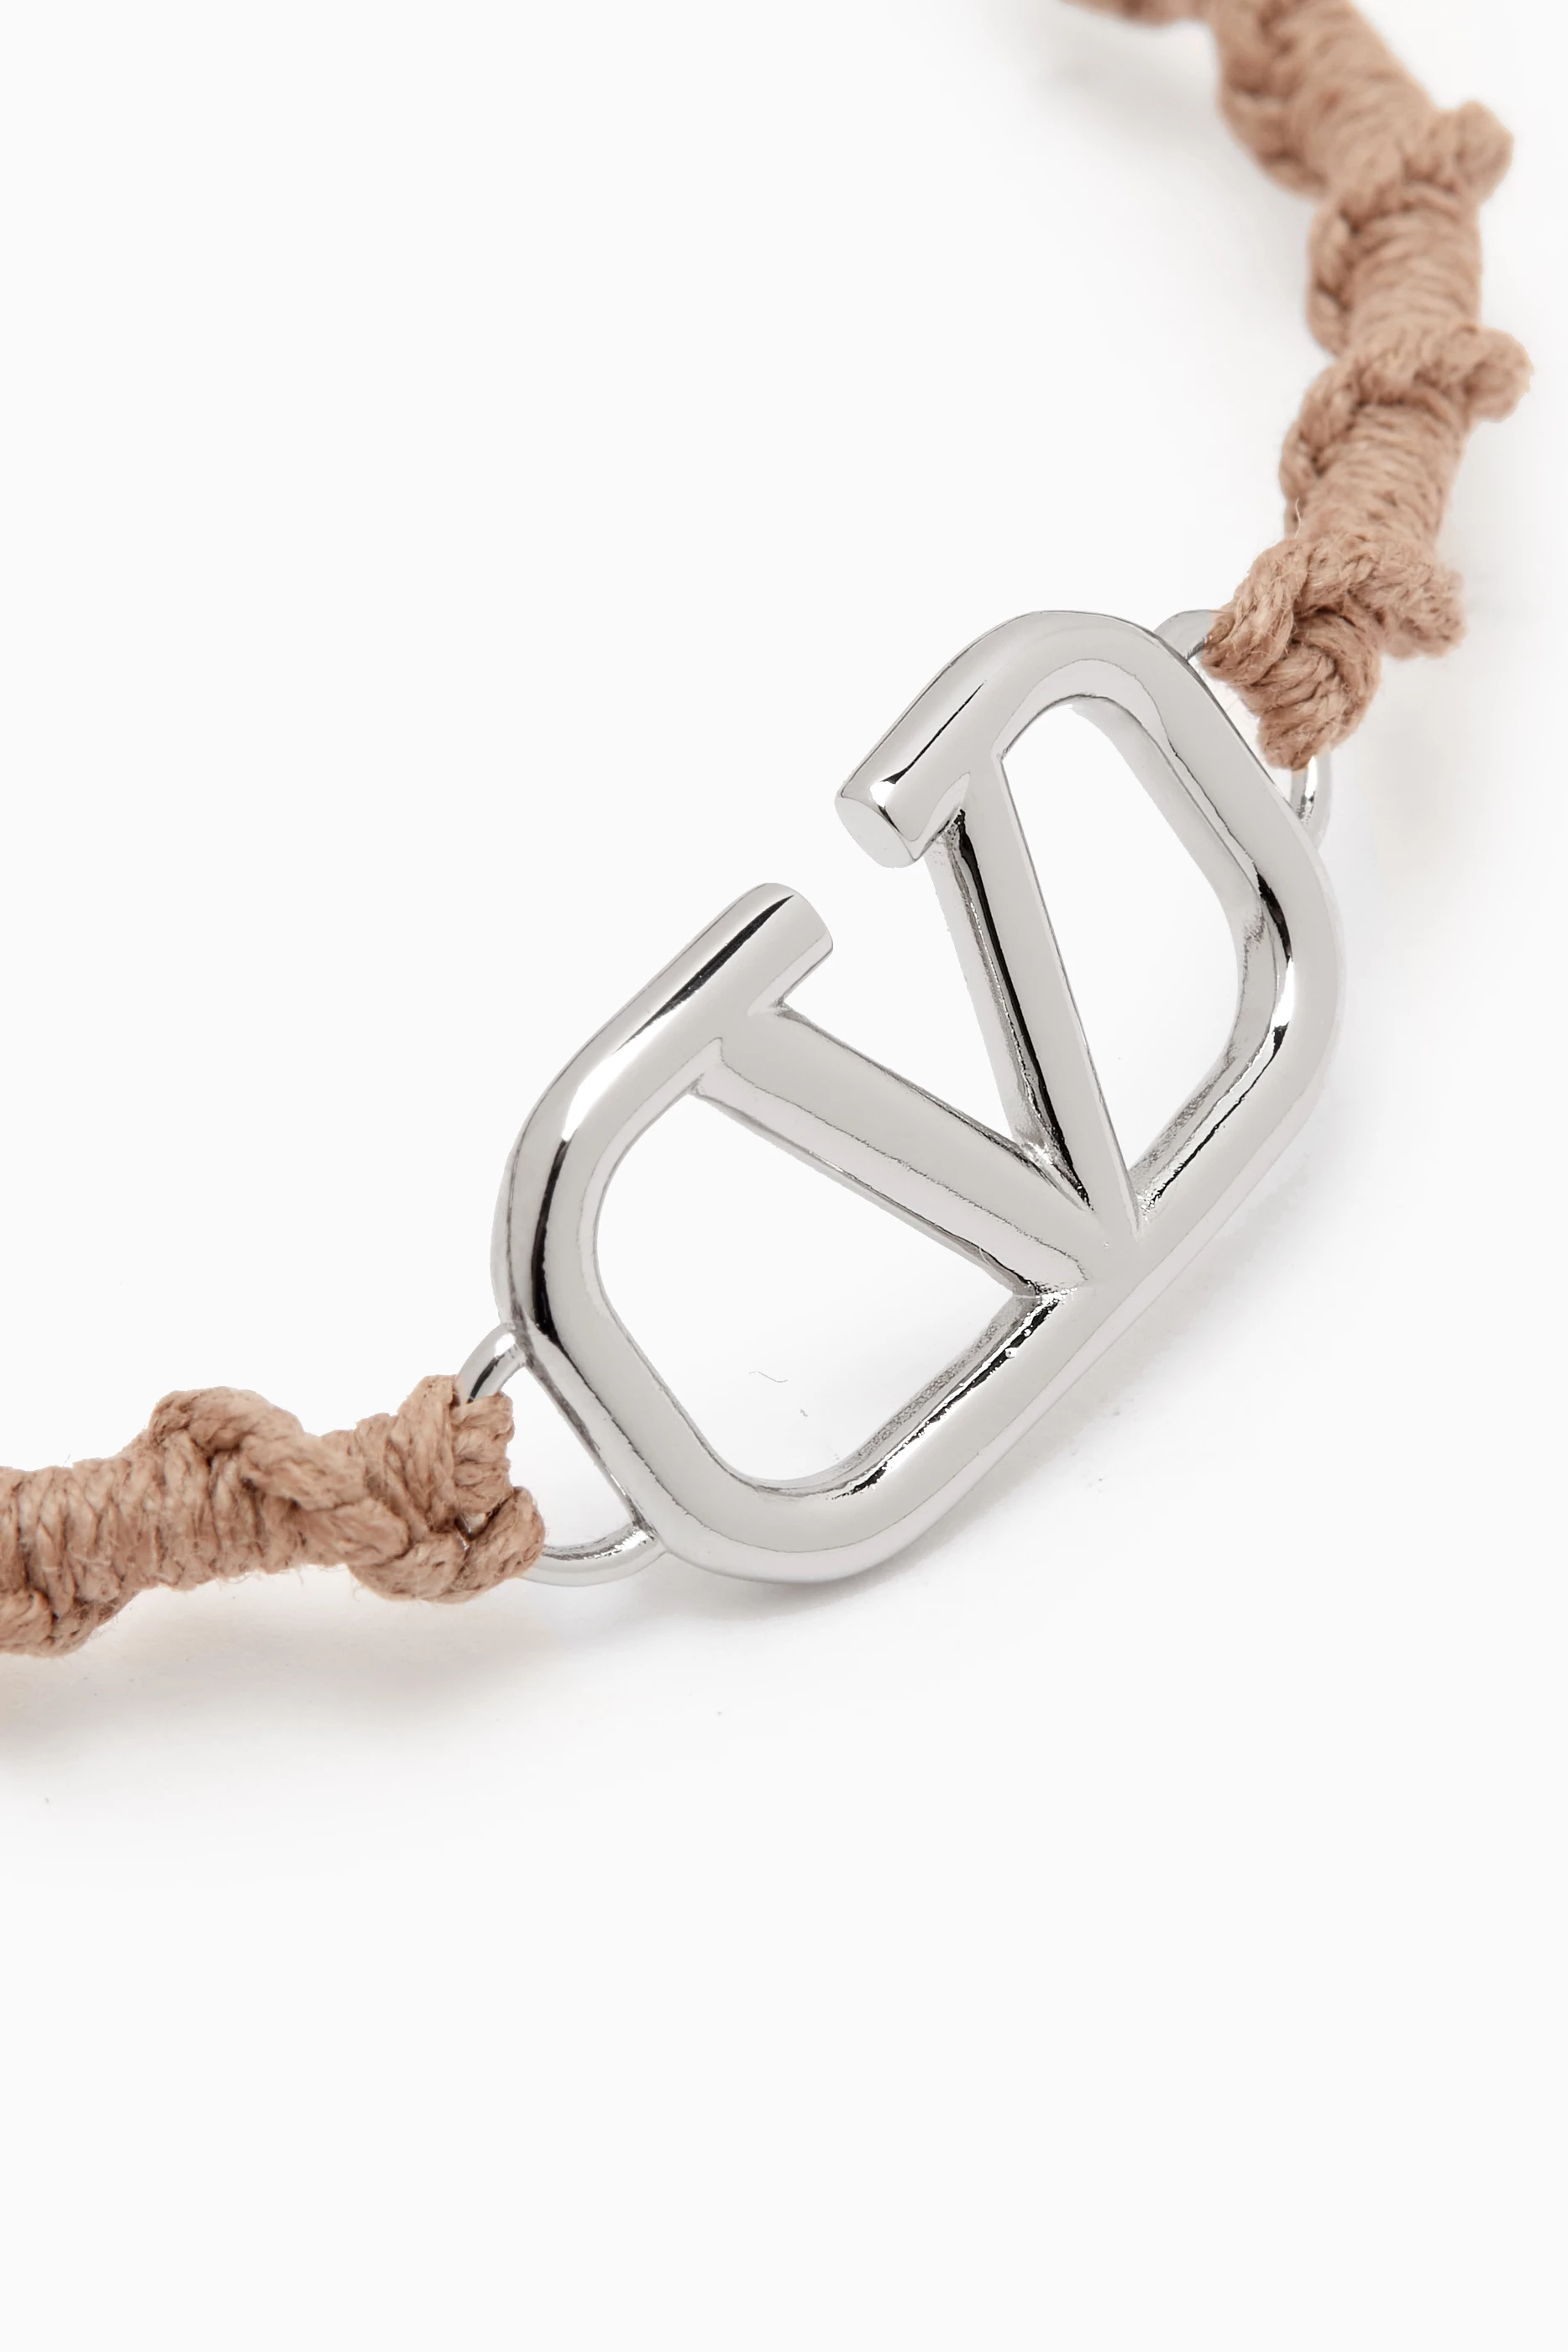 V Logo Chain Bracelet in Silver - Valentino Garavani